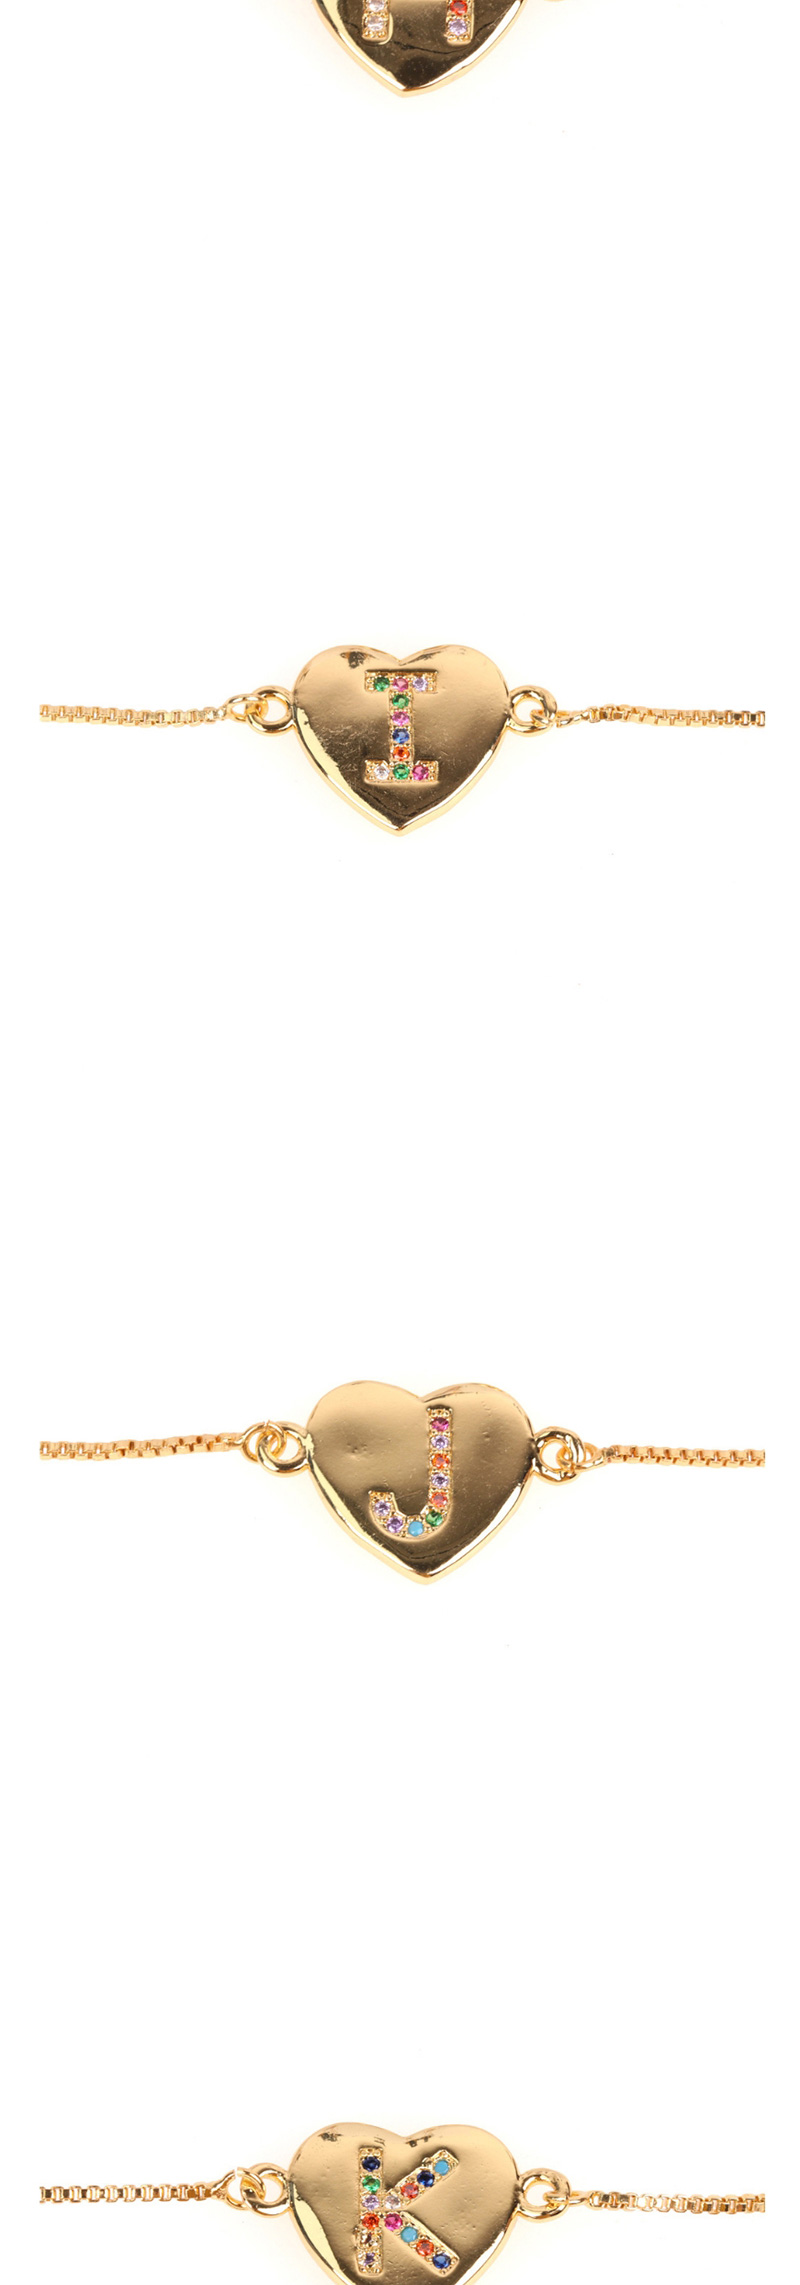 Fashion Z Golden Heart Bracelet With Diamonds And Letters,Bracelets